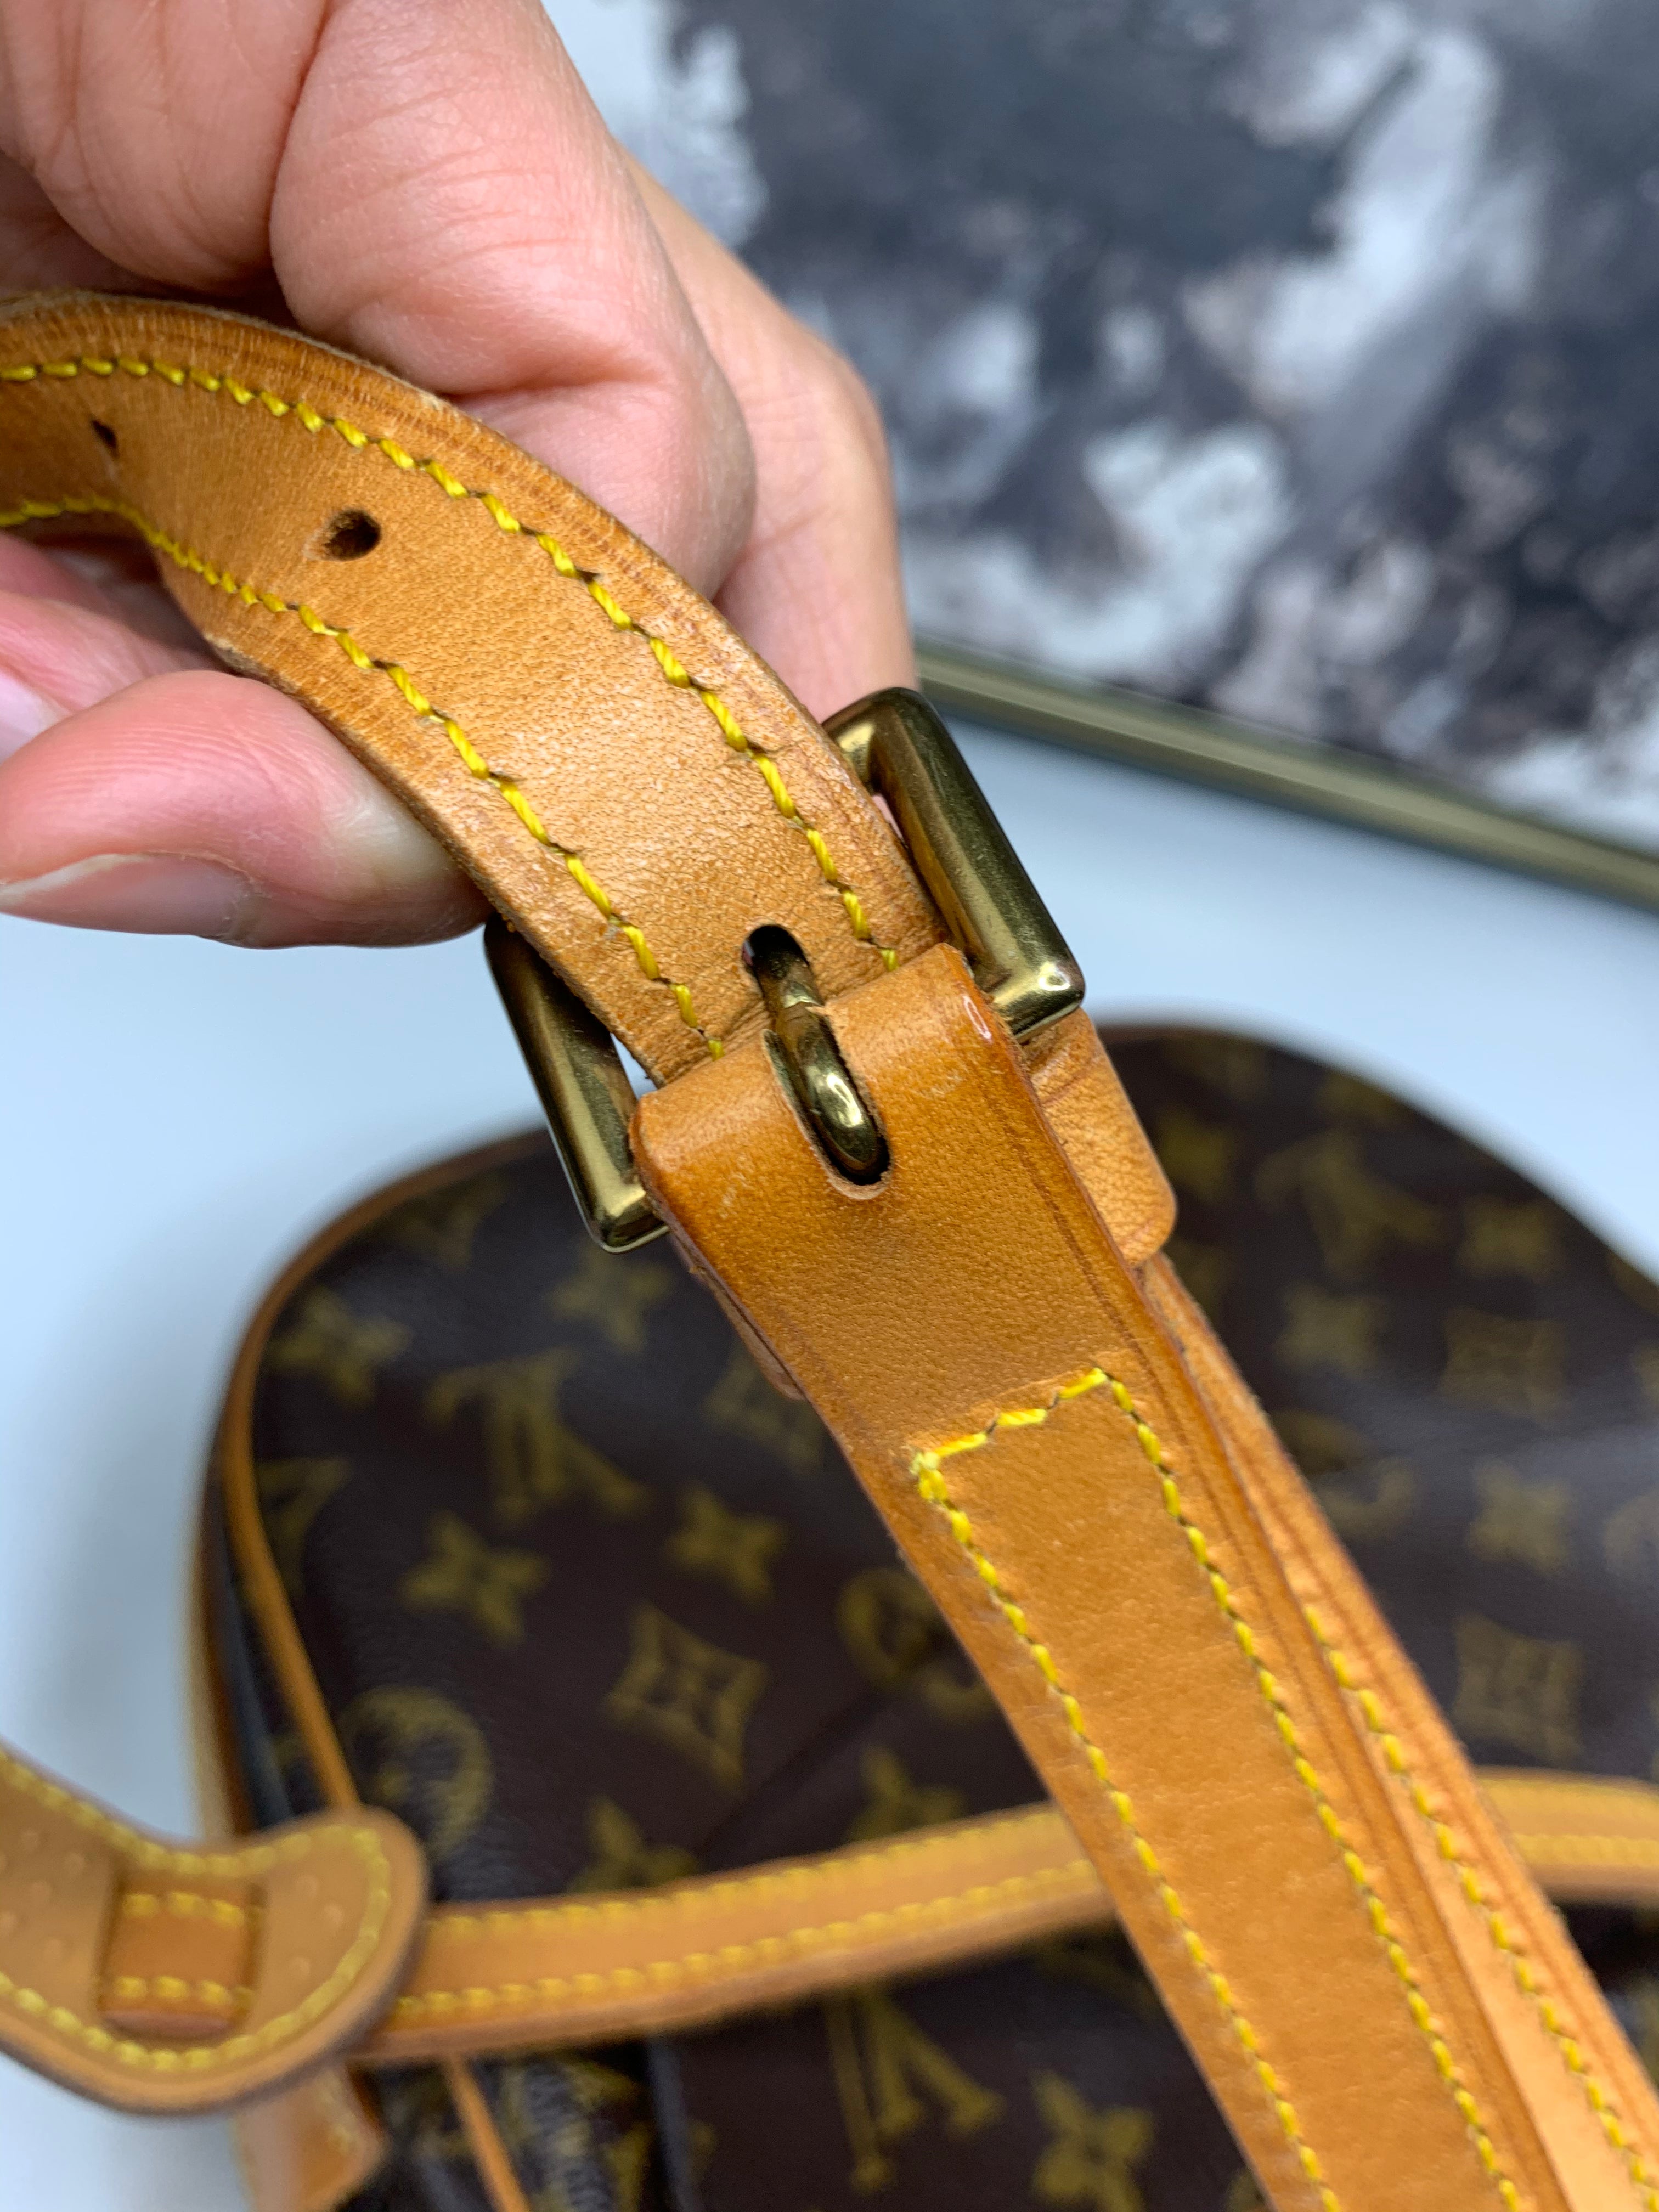 Louis Vuitton Jeune Fille Vintage Crossbody Bag